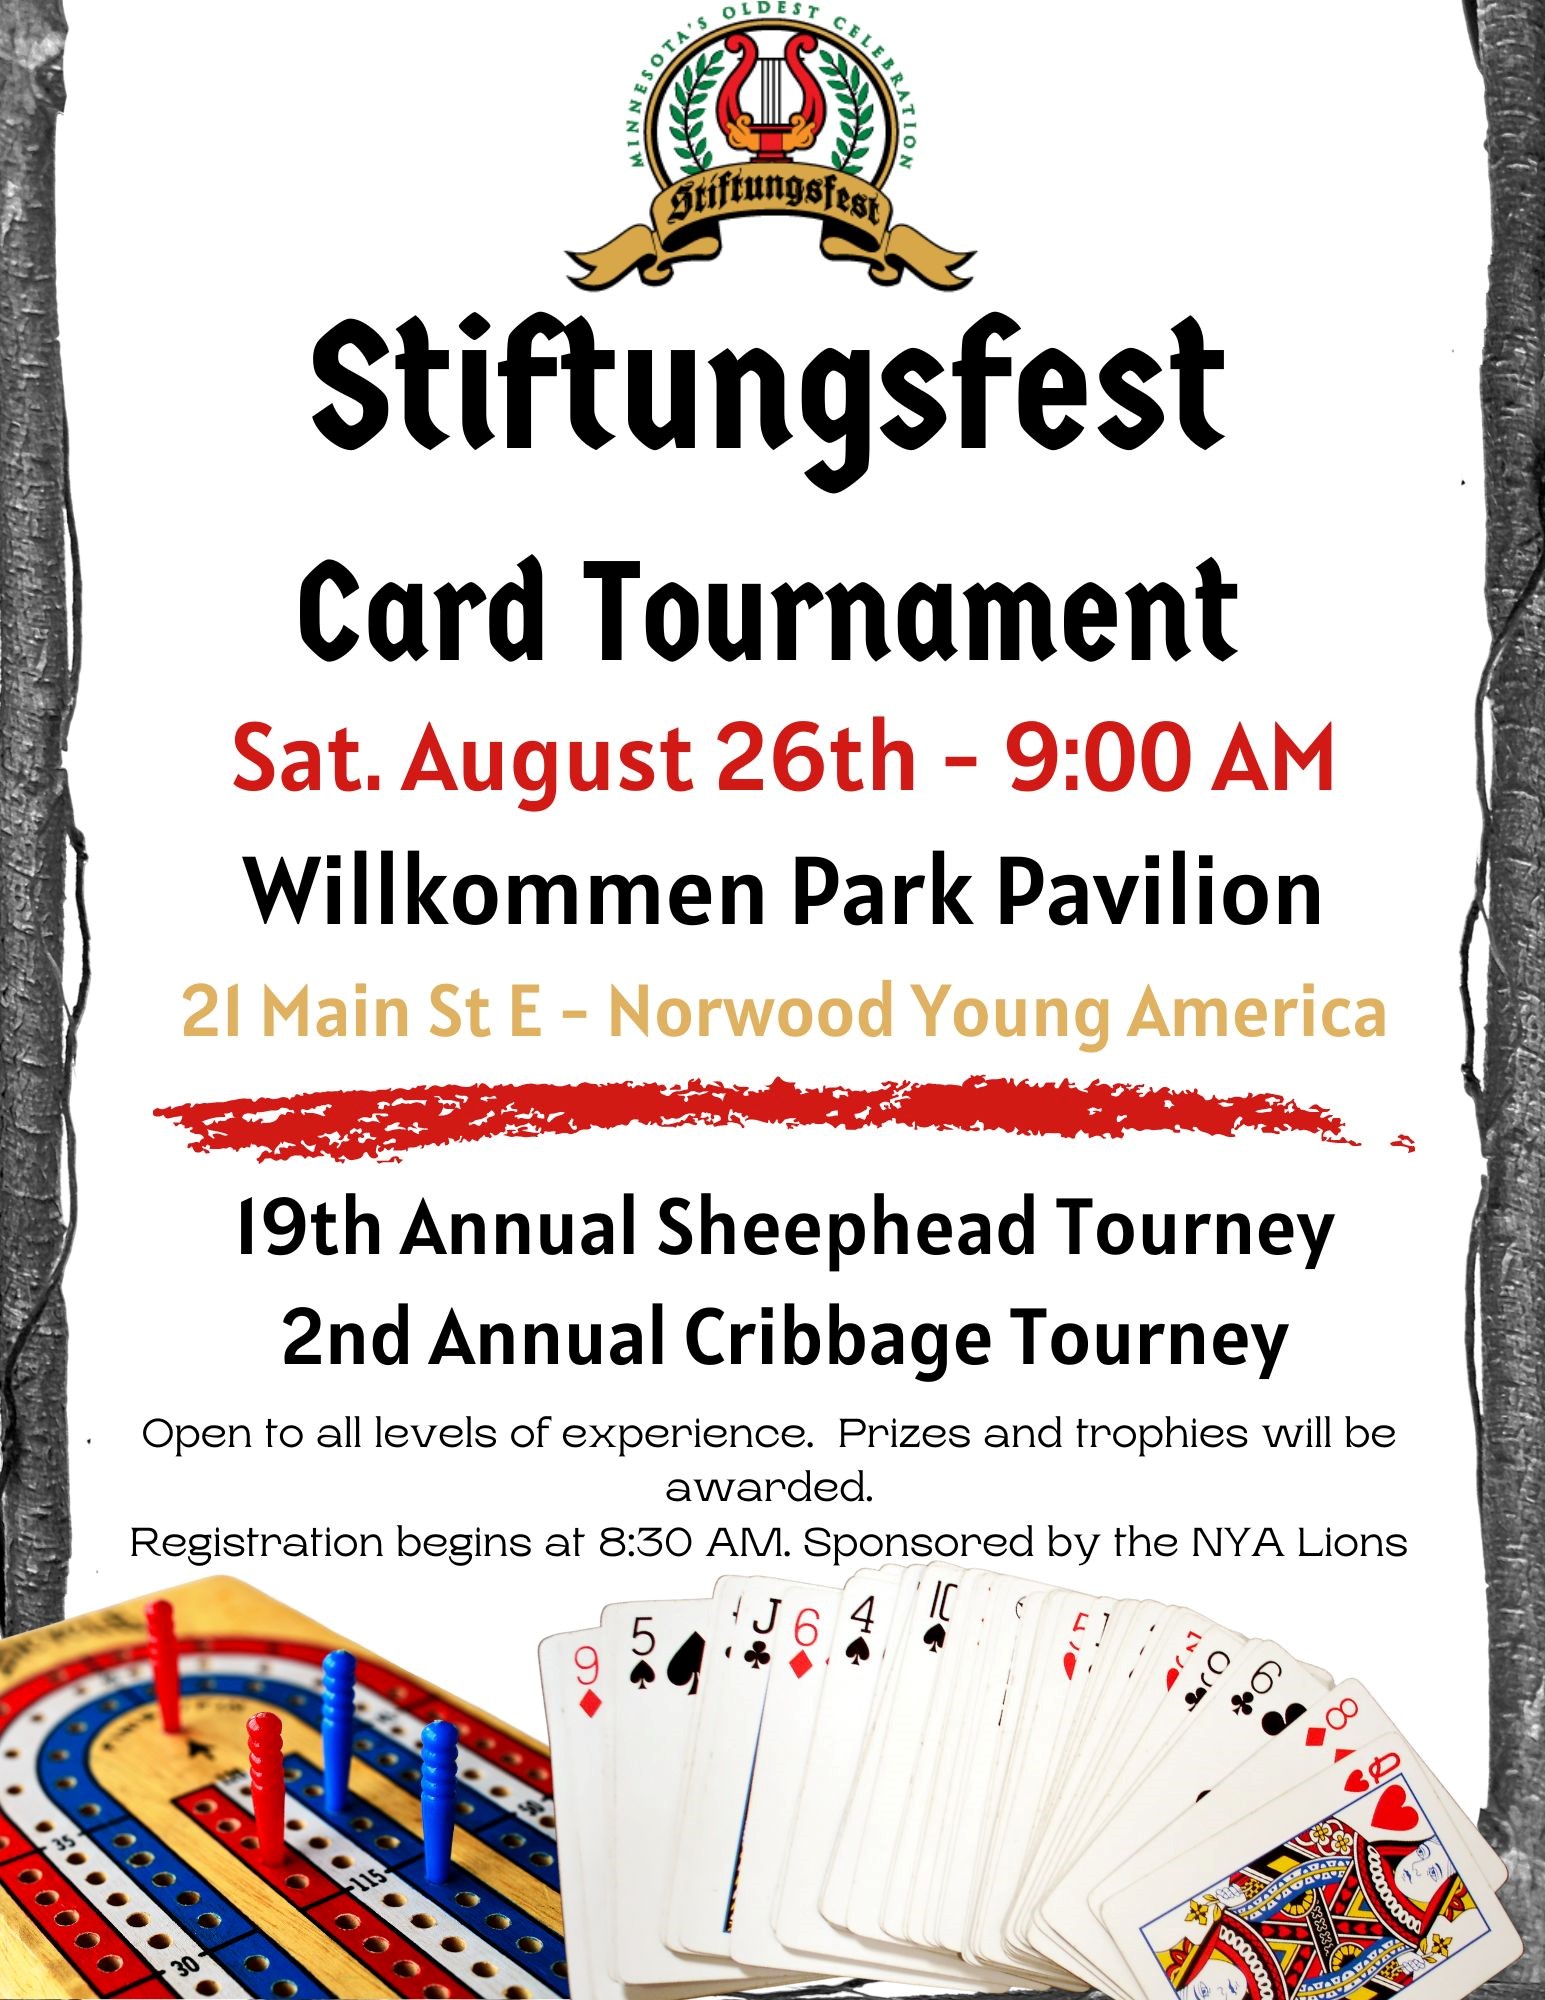 Stiftungsfest card tournament